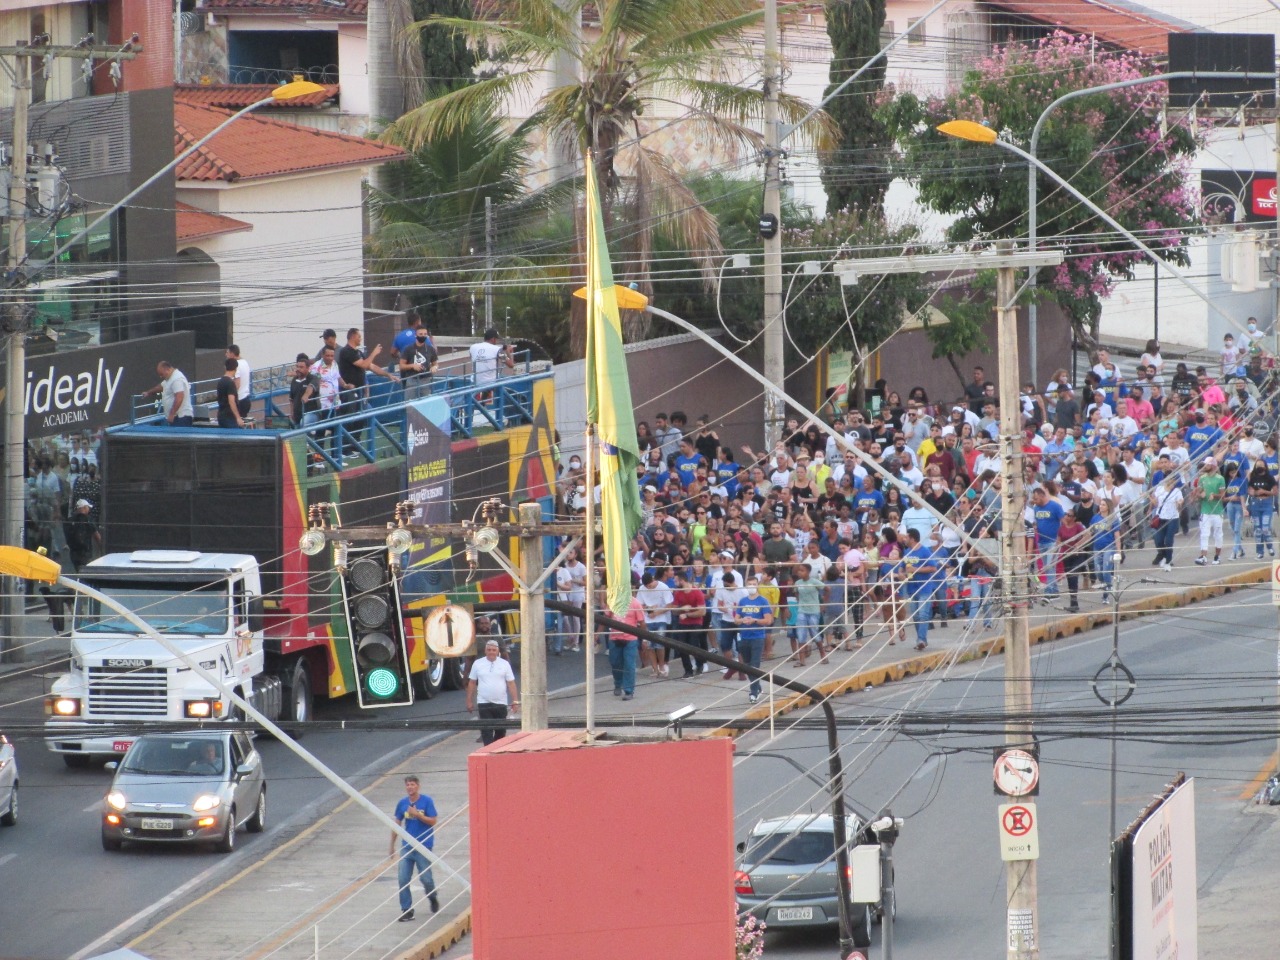 Marcha para Jesus não tinha autorização para interditar vias, diz Prefeitura; seguidores reagem